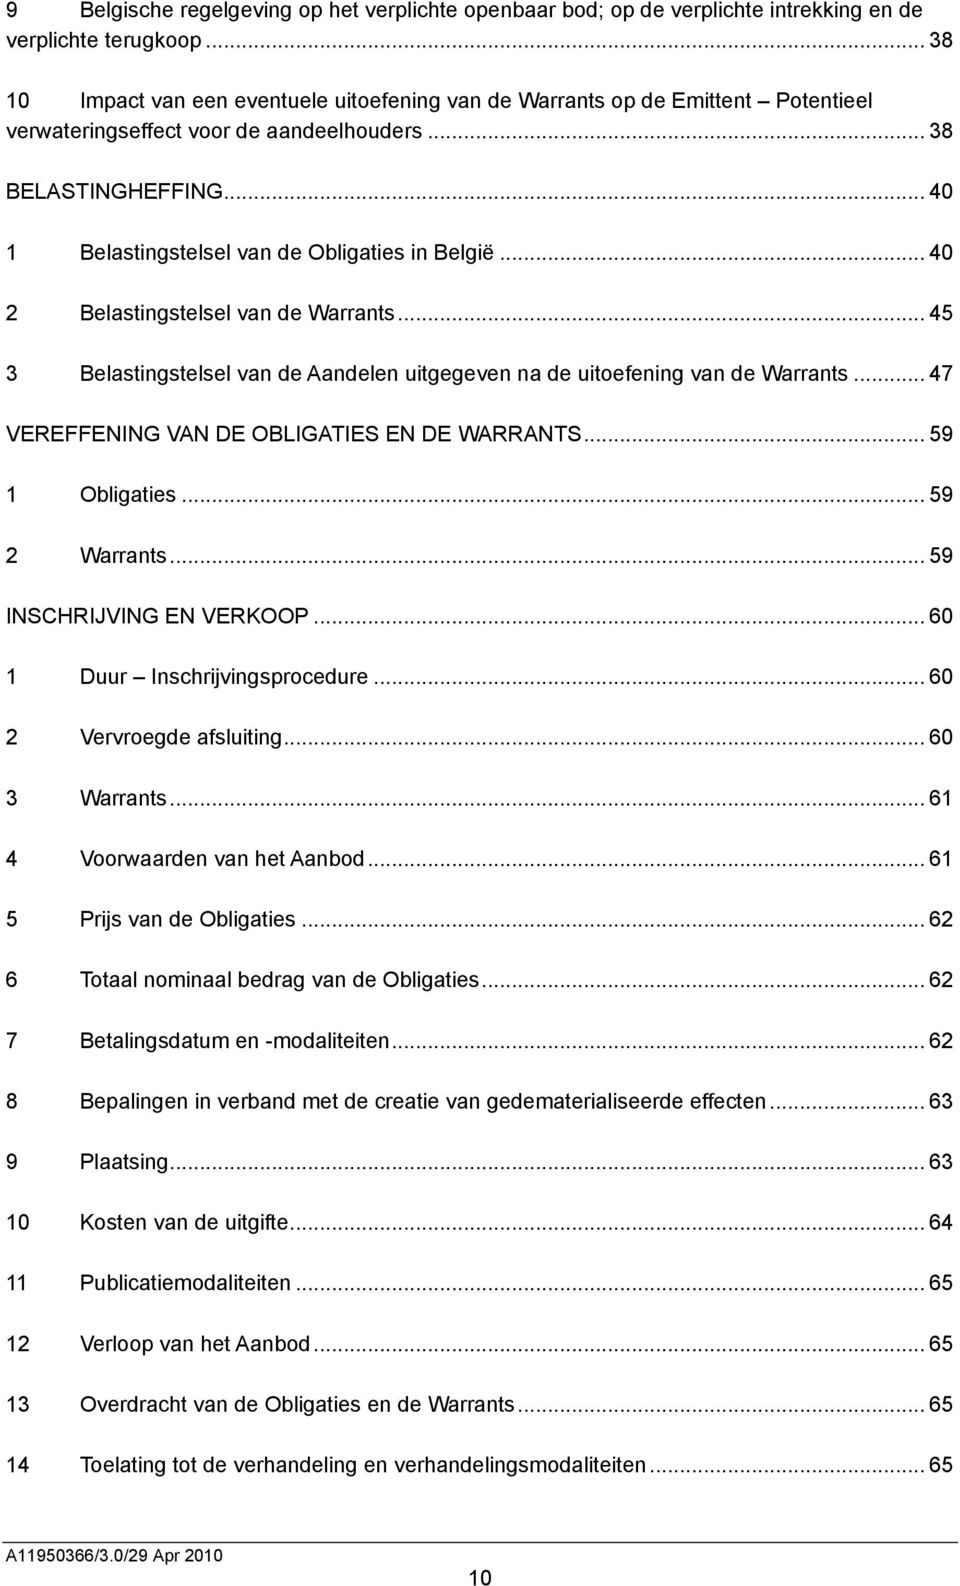 .. 40 1 Belastingstelsel van de Obligaties in België... 40 2 Belastingstelsel van de Warrants... 45 3 Belastingstelsel van de Aandelen uitgegeven na de uitoefening van de Warrants.